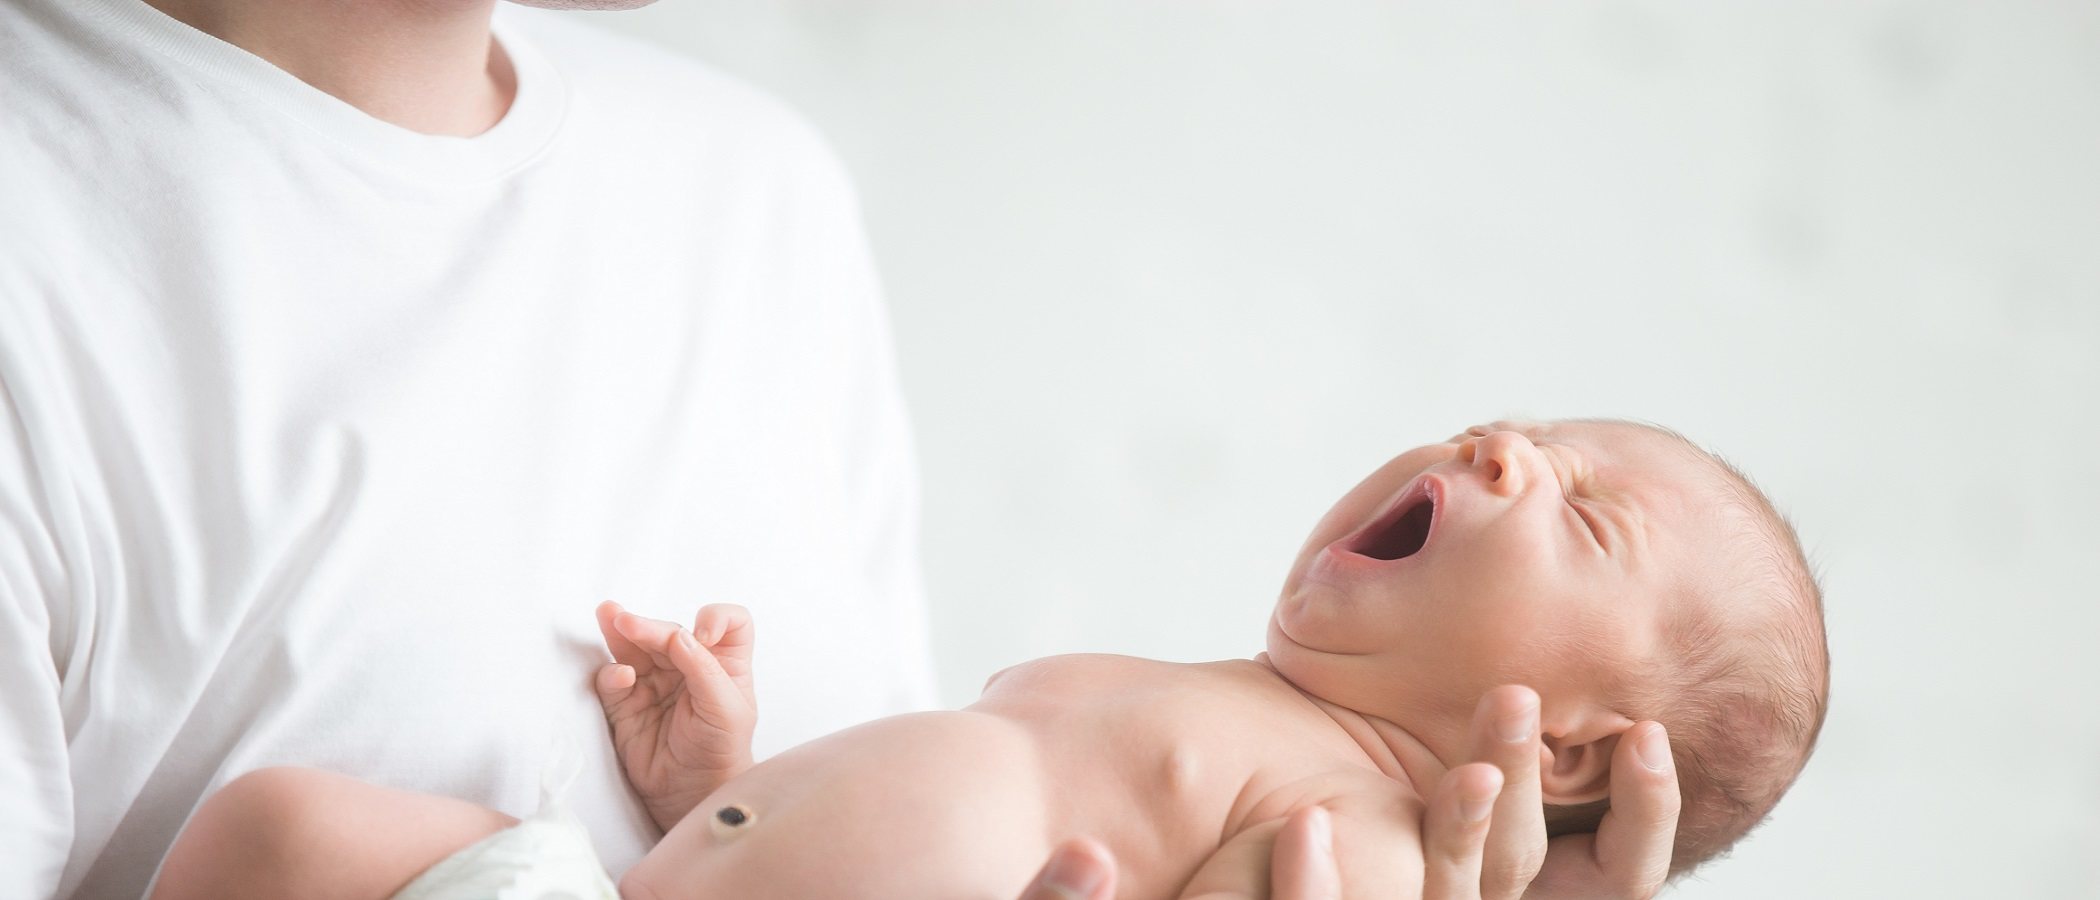 El peligro de sacudir o zarandear a los bebés